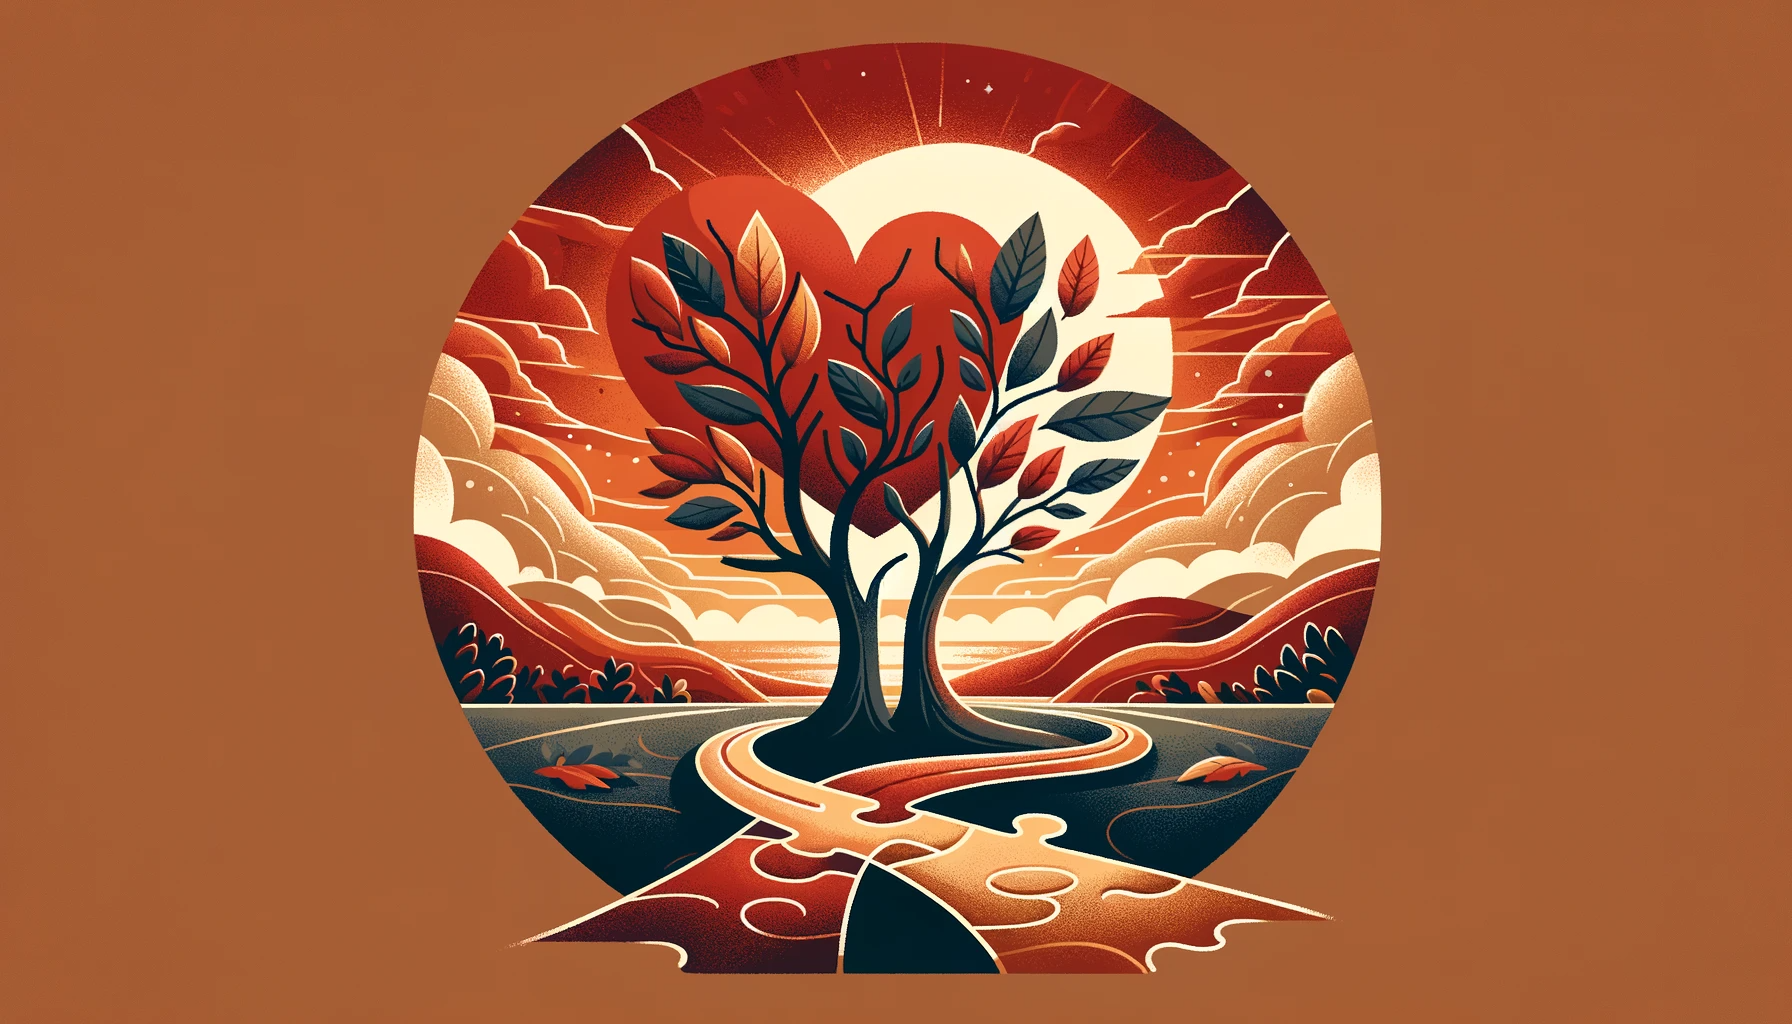 Miniaturka do artykułu o długotrwałych związkach, przedstawiająca dwa drzewa rosnące blisko siebie, puzzle, ścieżkę prowadzącą do zachodu słońca, w kolorach czerwieni, złota, odcieni ziemi